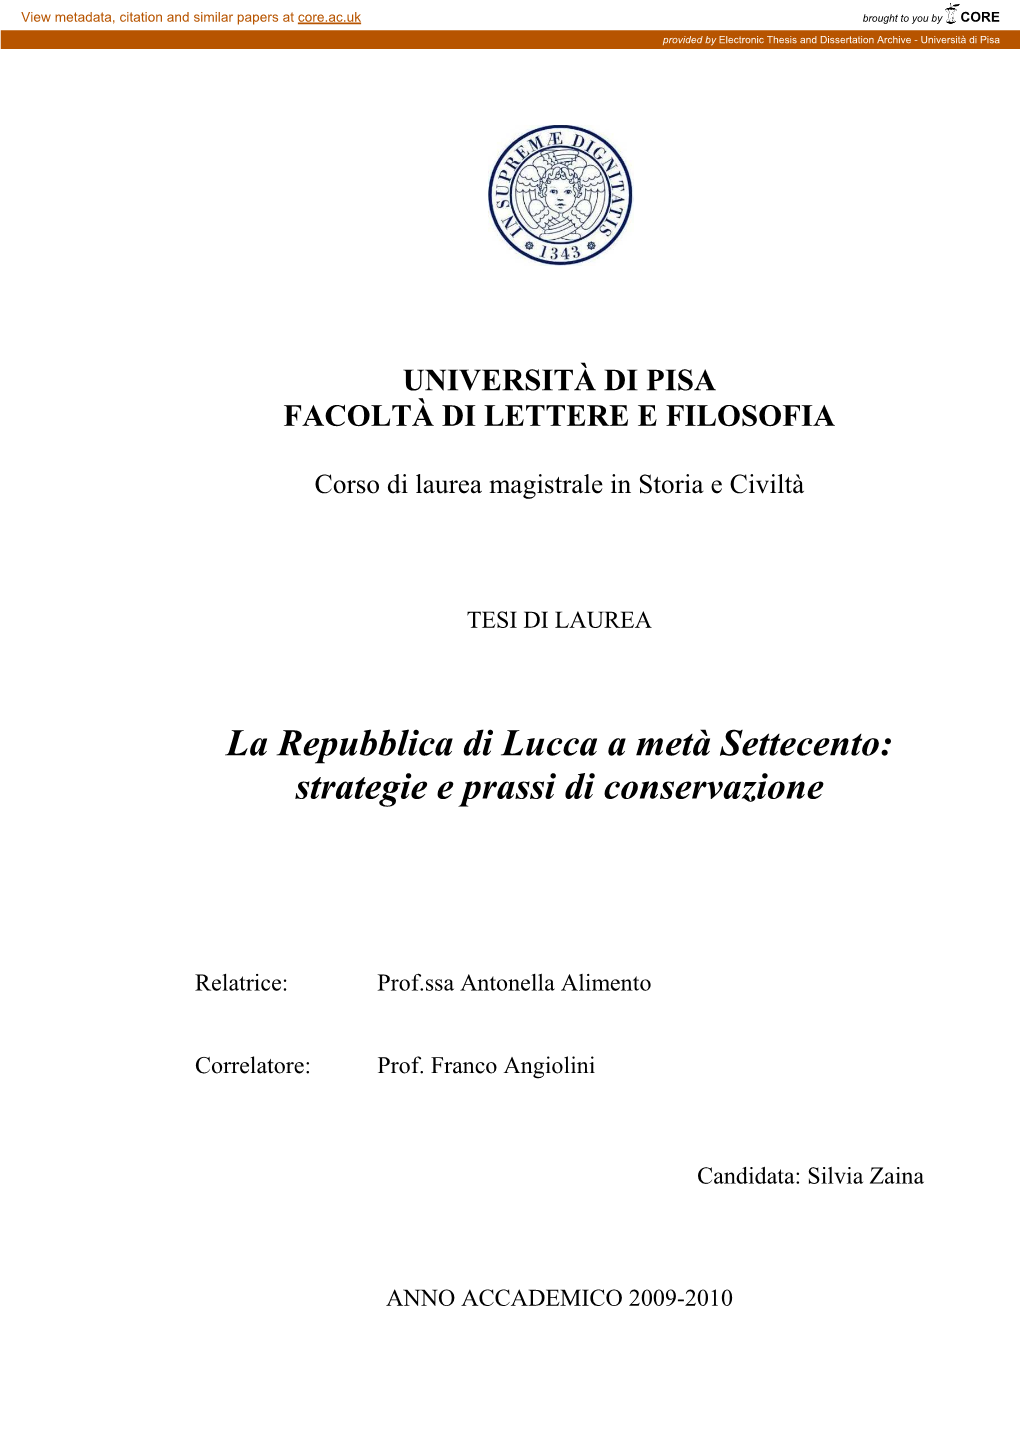 La Repubblica Di Lucca a Metà Settecento: Strategie E Prassi Di Conservazione